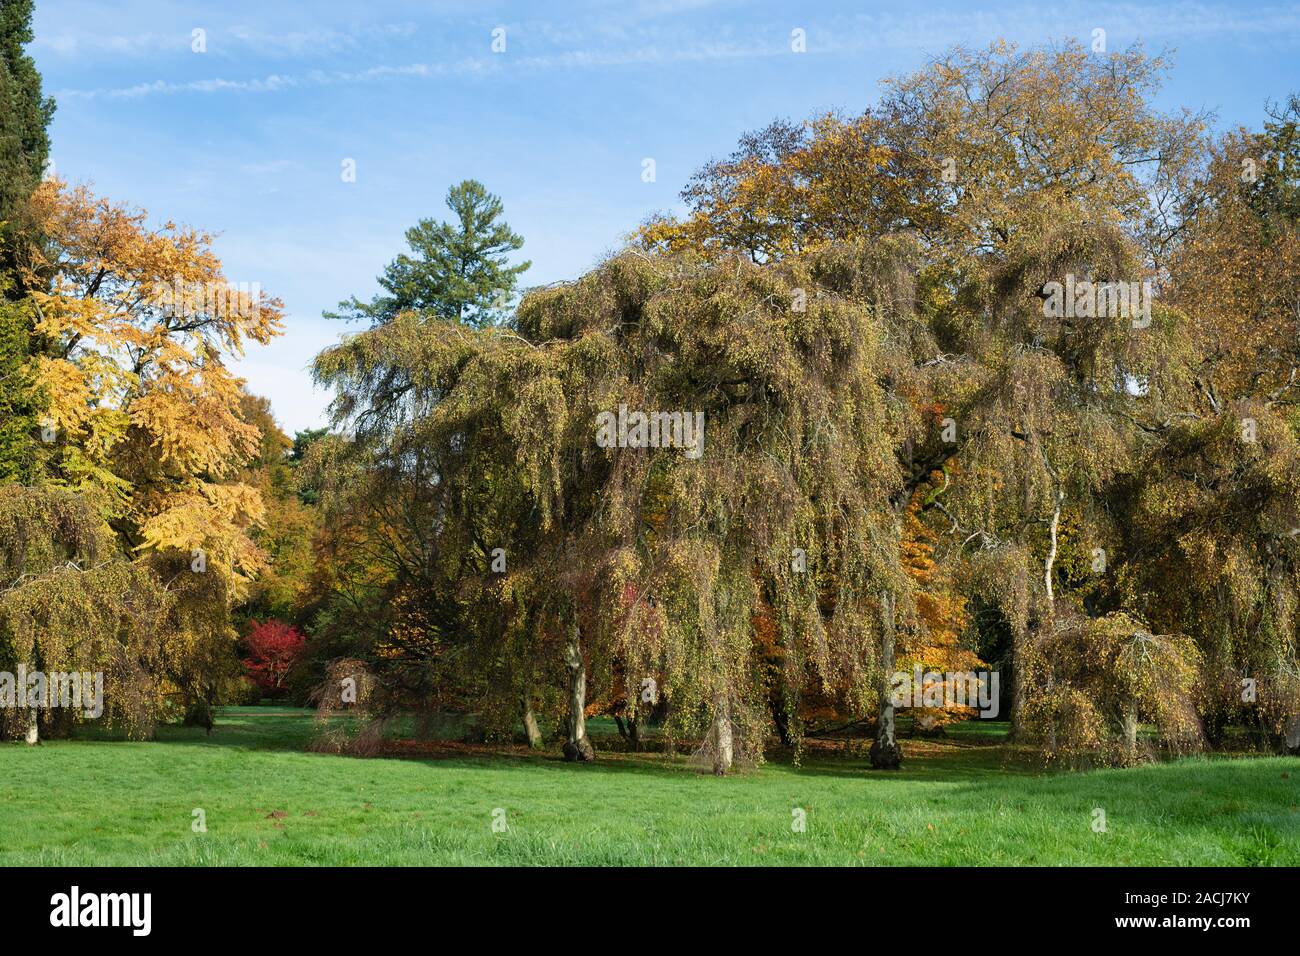 Betula pendula Youngii "". Giovani il pianto della betulla a Westonbirt Arboretum in autunno. Gloucestershire, Inghilterra Foto Stock